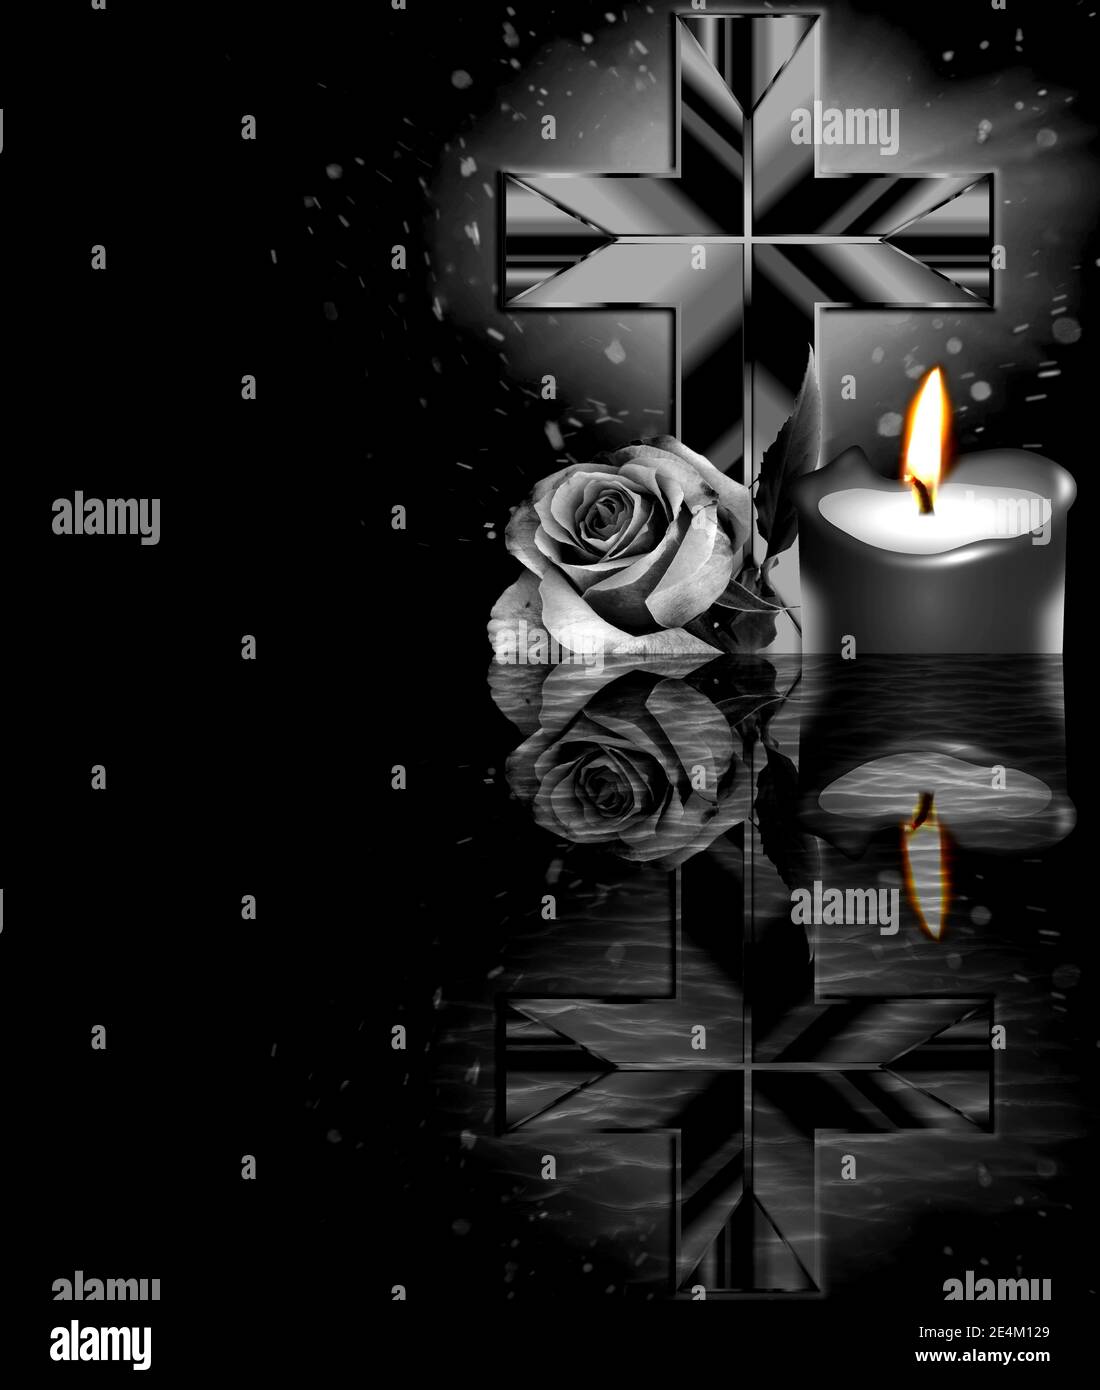 Rose, Kreuz und Kerze auf schwarzem Hintergrund. Kondolenzkarte. Leerer Ort für emotionalen, sentimentalen Text oder Zitat. Stockfoto